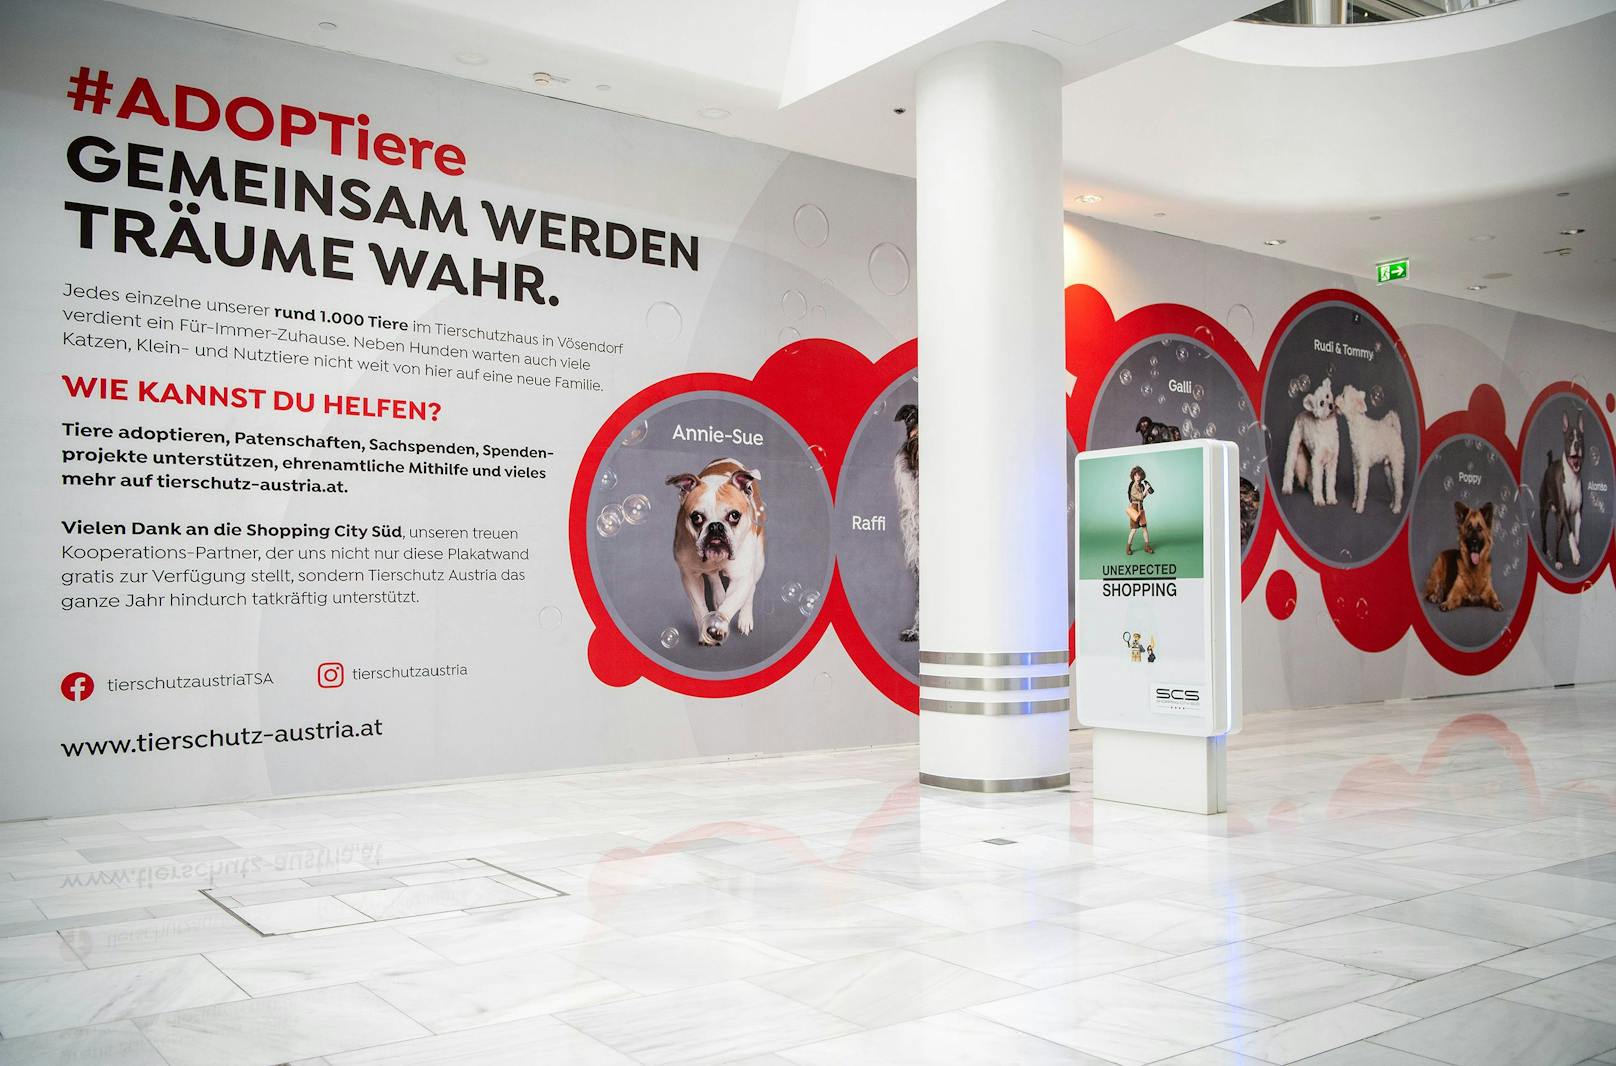 Endlich gesehen werden! Die #ADOPTiere Kampagne von Tierschutz Austria bietet Langsitzern nun eine Vermittlungschance. 